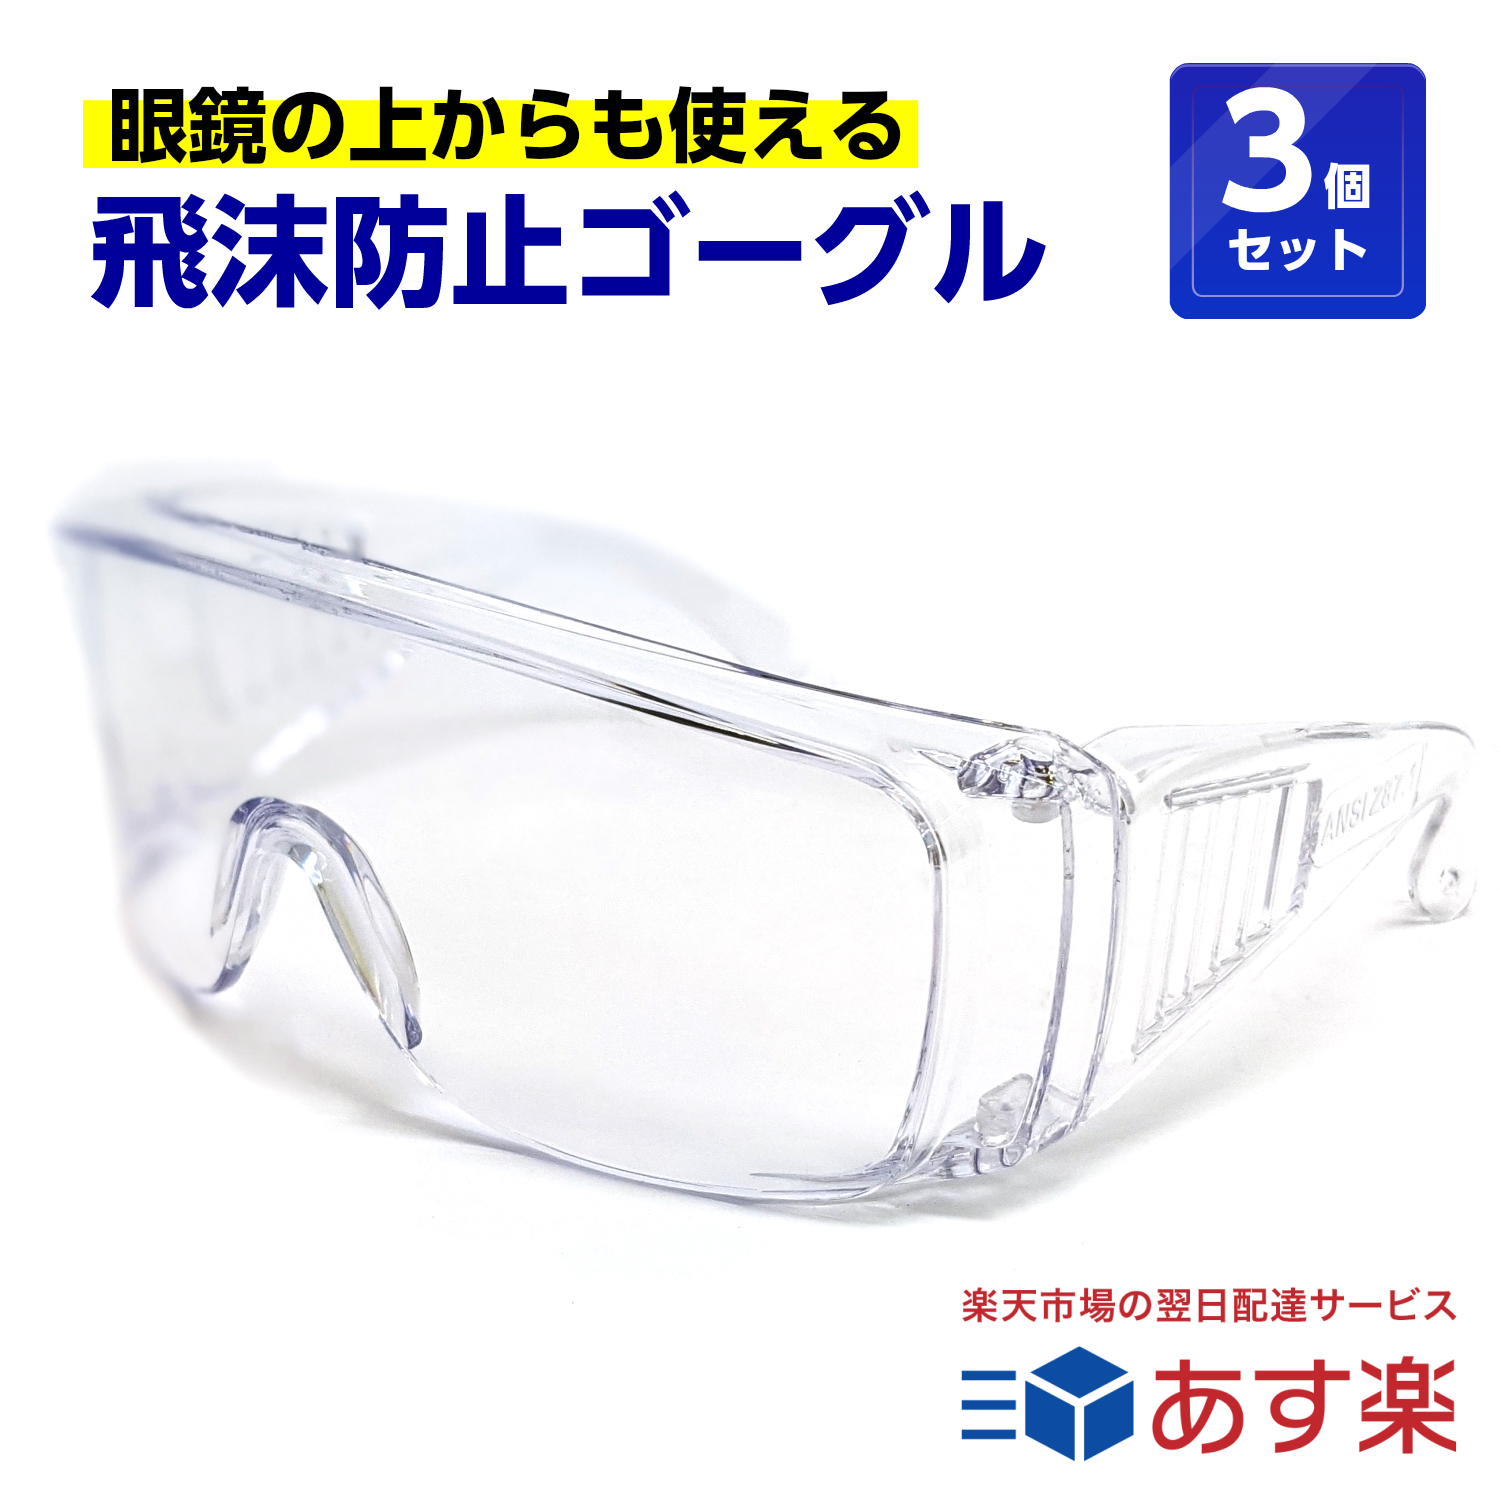 保護 驚きの値段で 予防 衛生 医療従事者 保安担当 工事 工作 メガネ 全品ポイント3倍 飛沫防止 介護 tkh 保護メガネ 割り引き 医療 くもらないセフティグラス 眼鏡の上から使えます rsl 3個セット